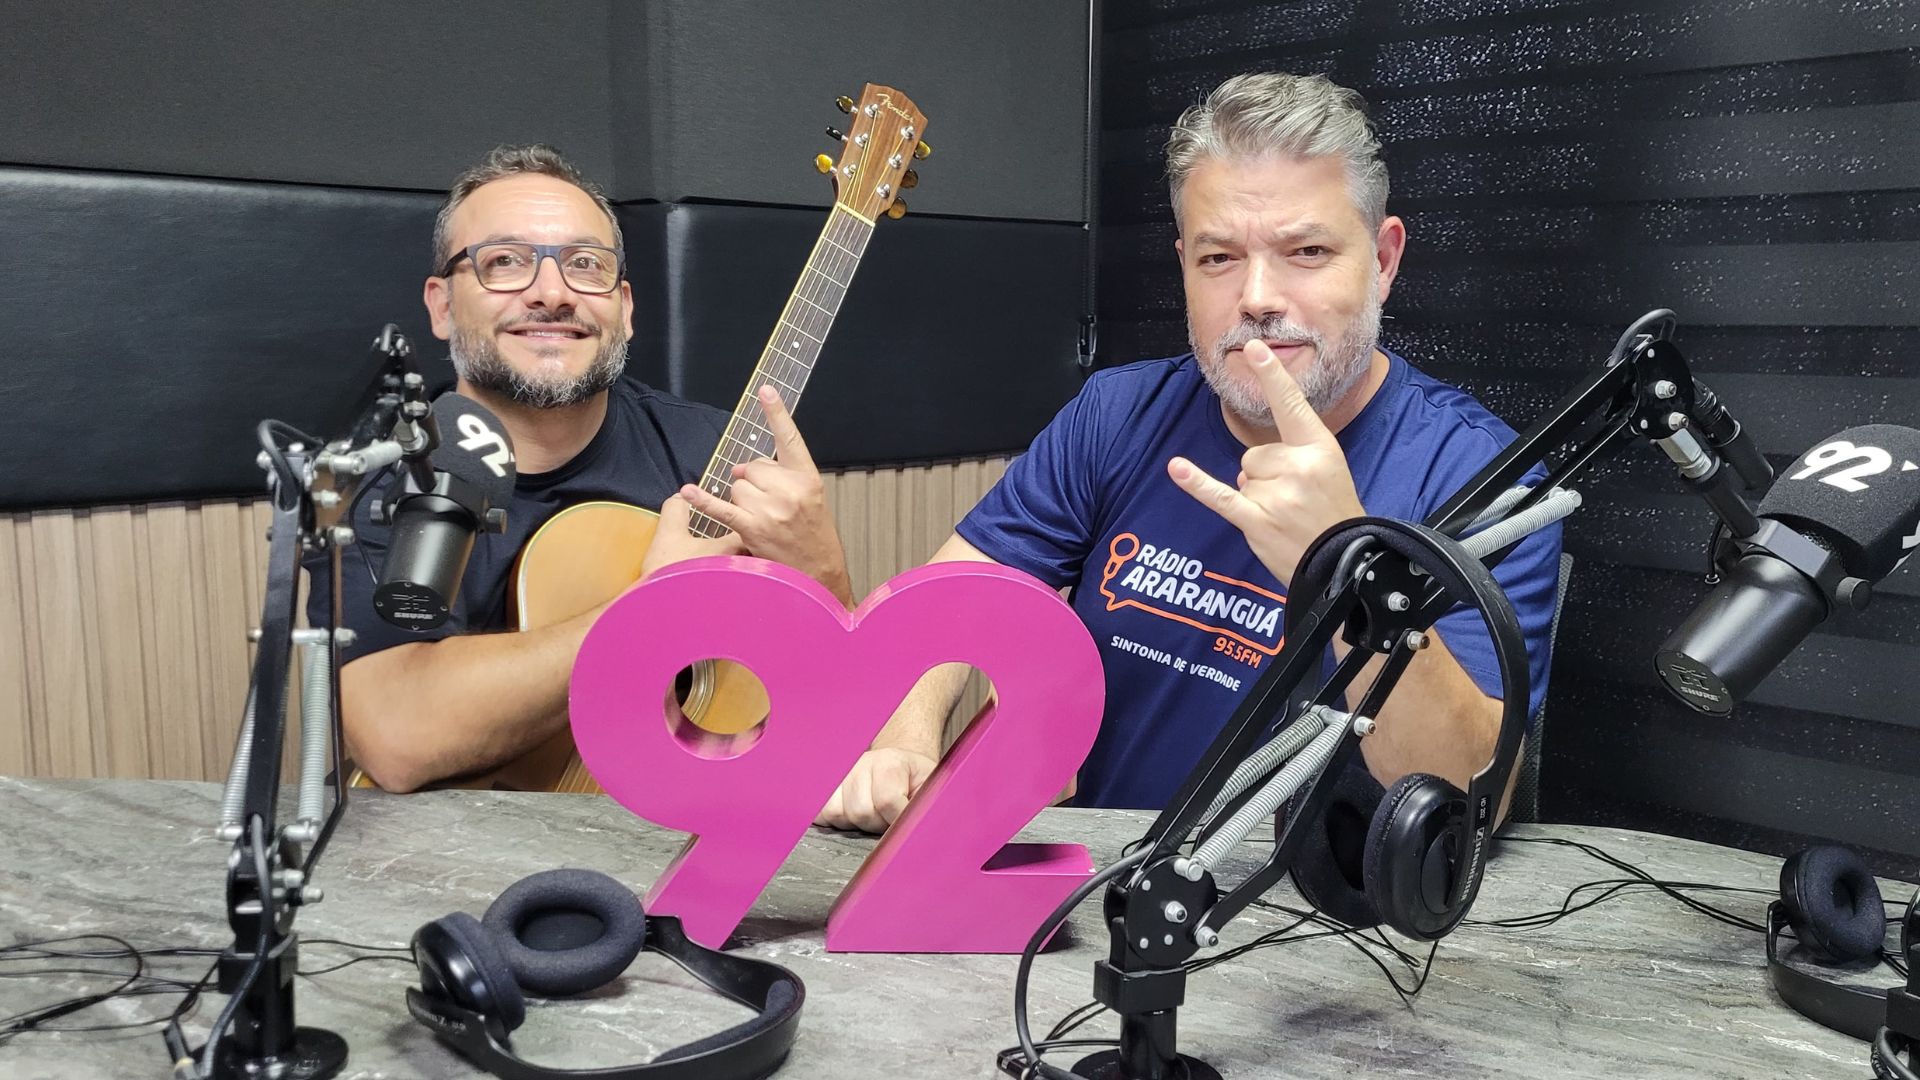 Marcelo Pedroso “conquista” o mundo com seu violão